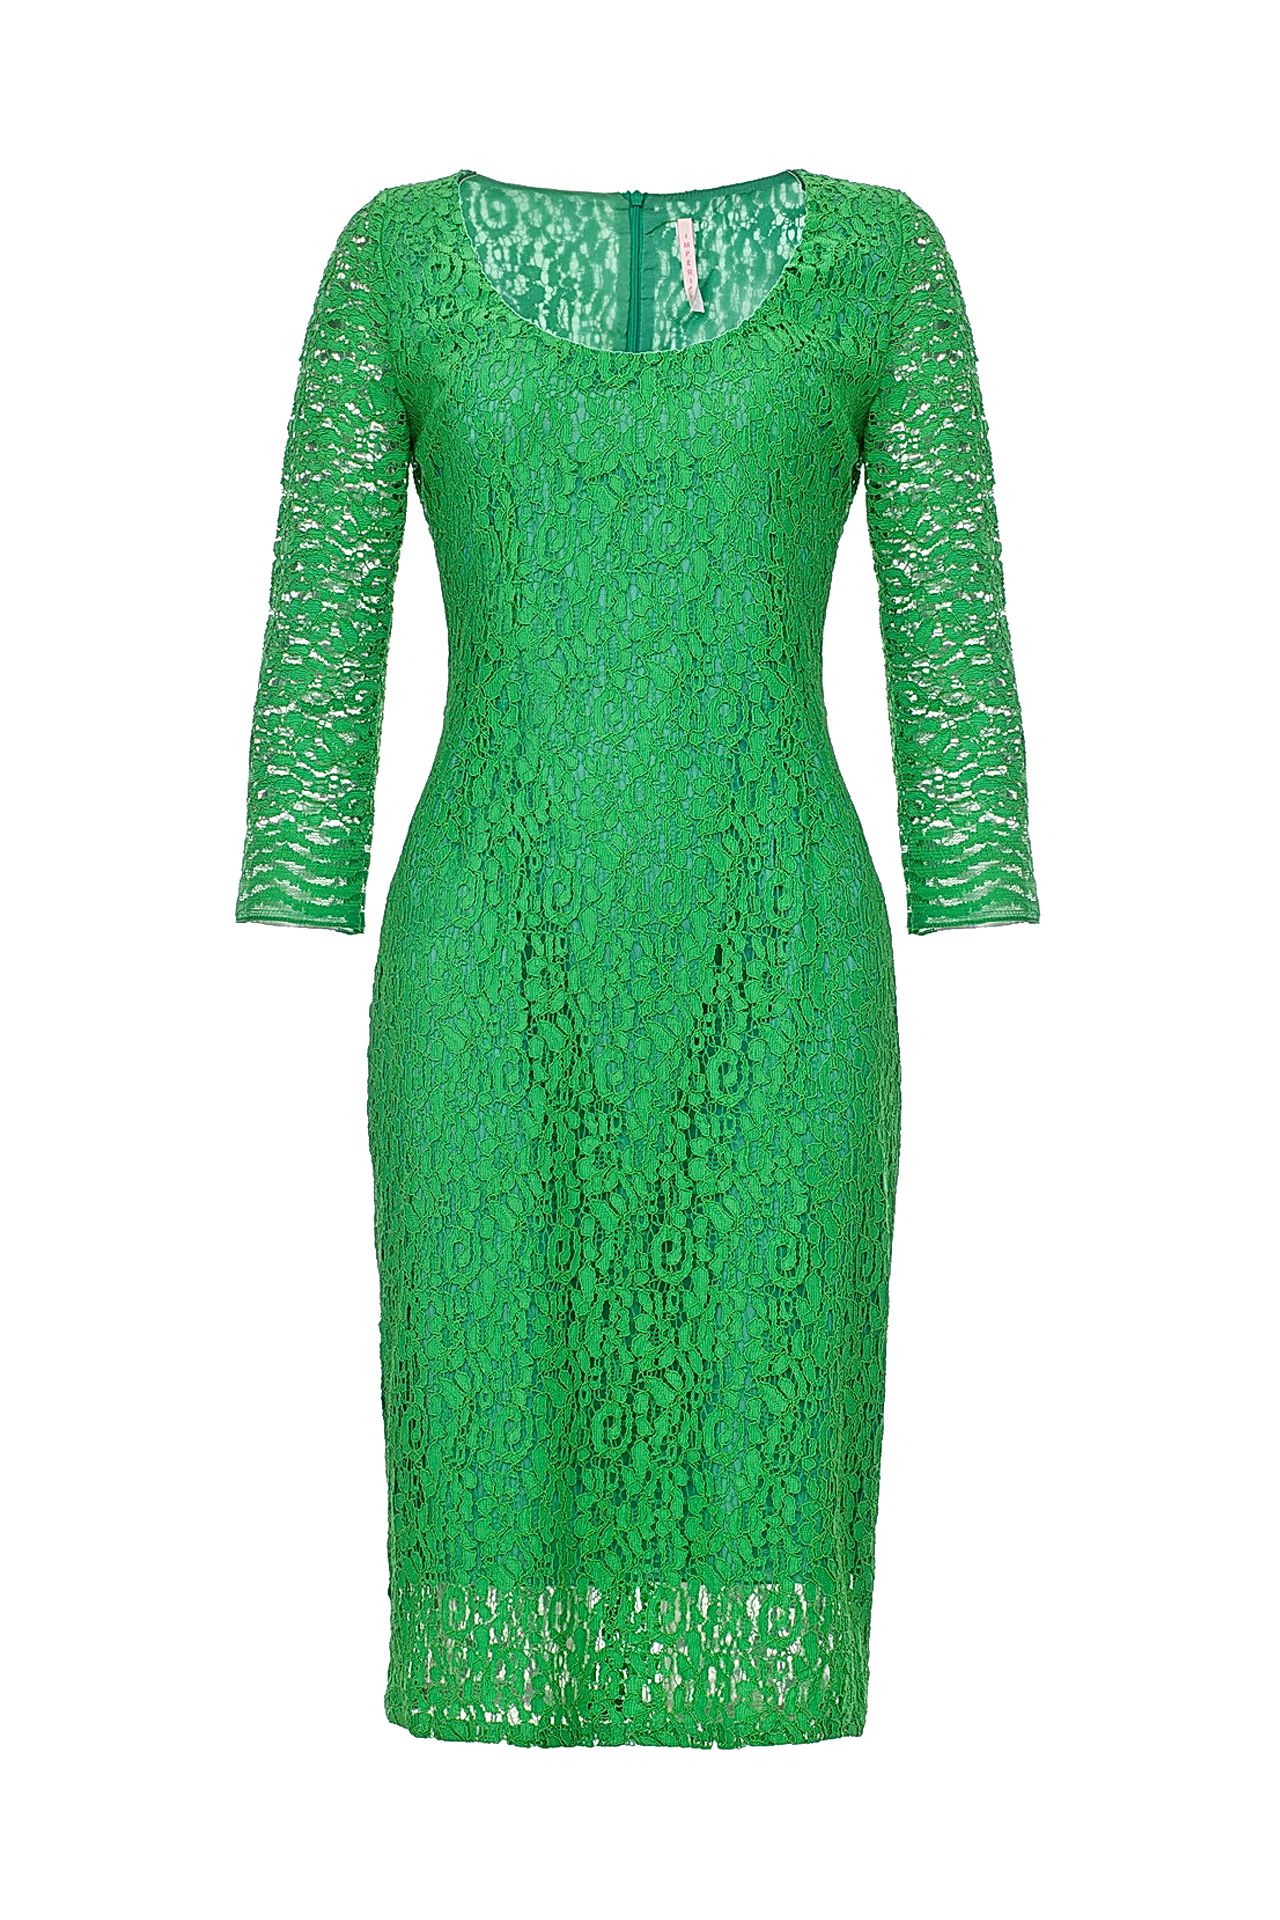 Платье зеленое гипюр Инсити